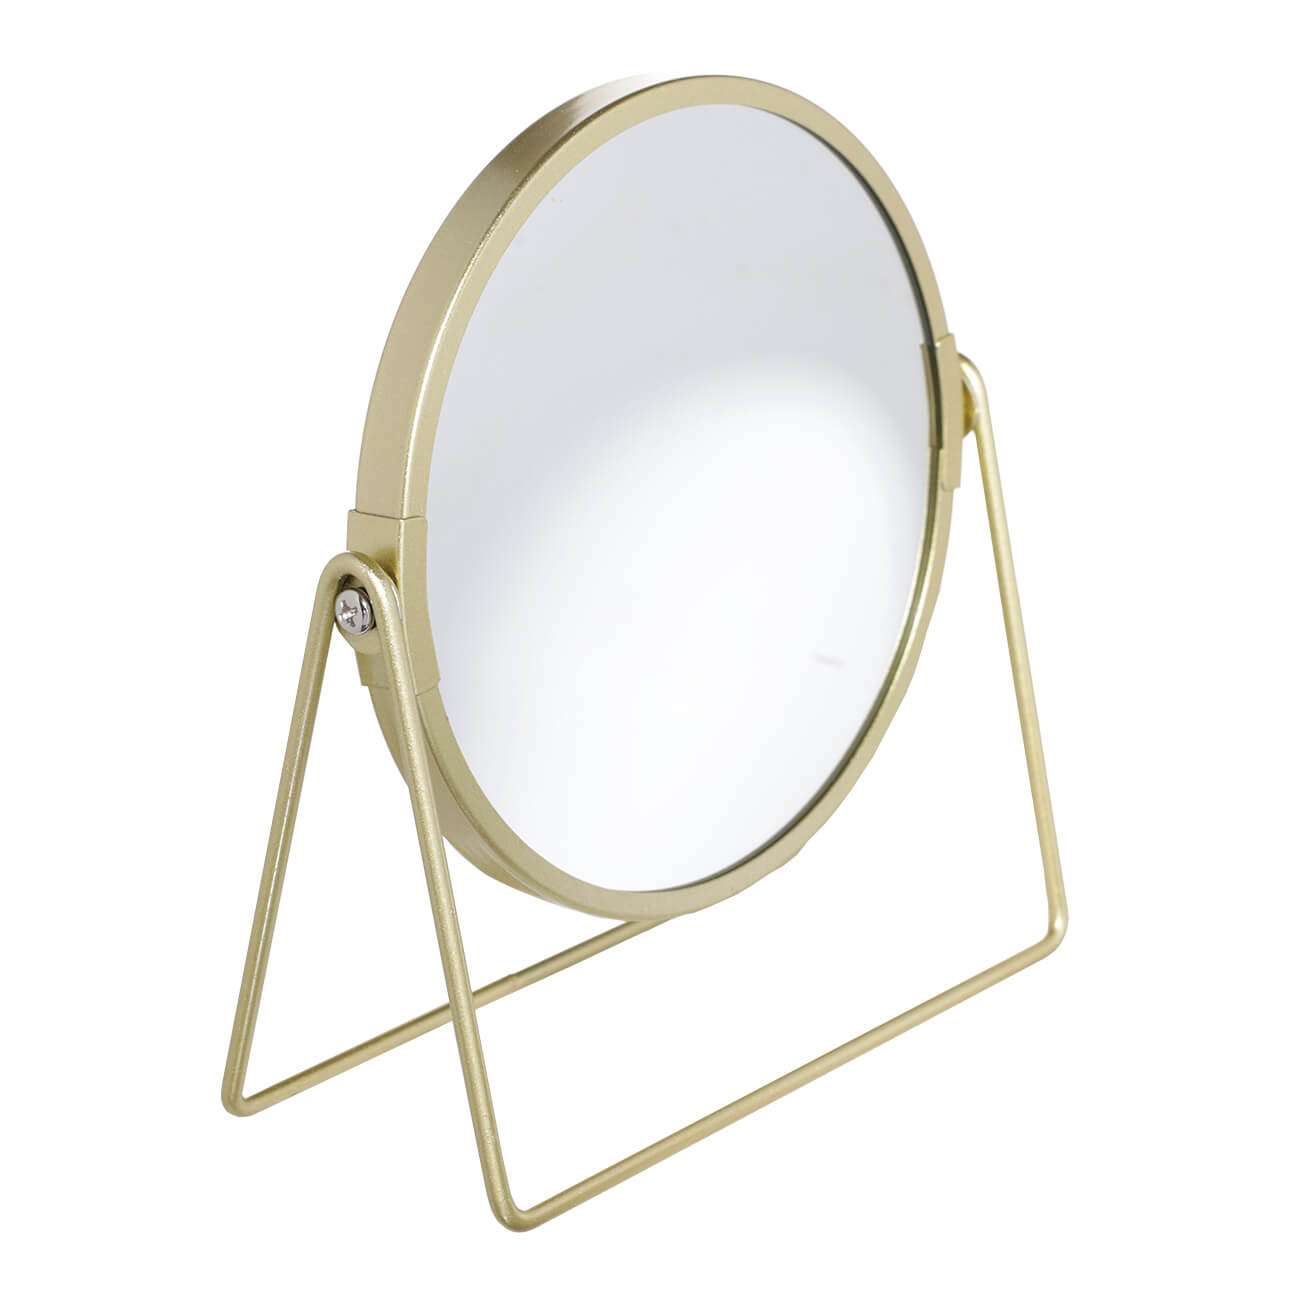 Зеркало настольное, 18 см, двустороннее, металл, круглое, золотистое, Freya зеркало косметическое настольное swensa двустороннее 17 см золотой